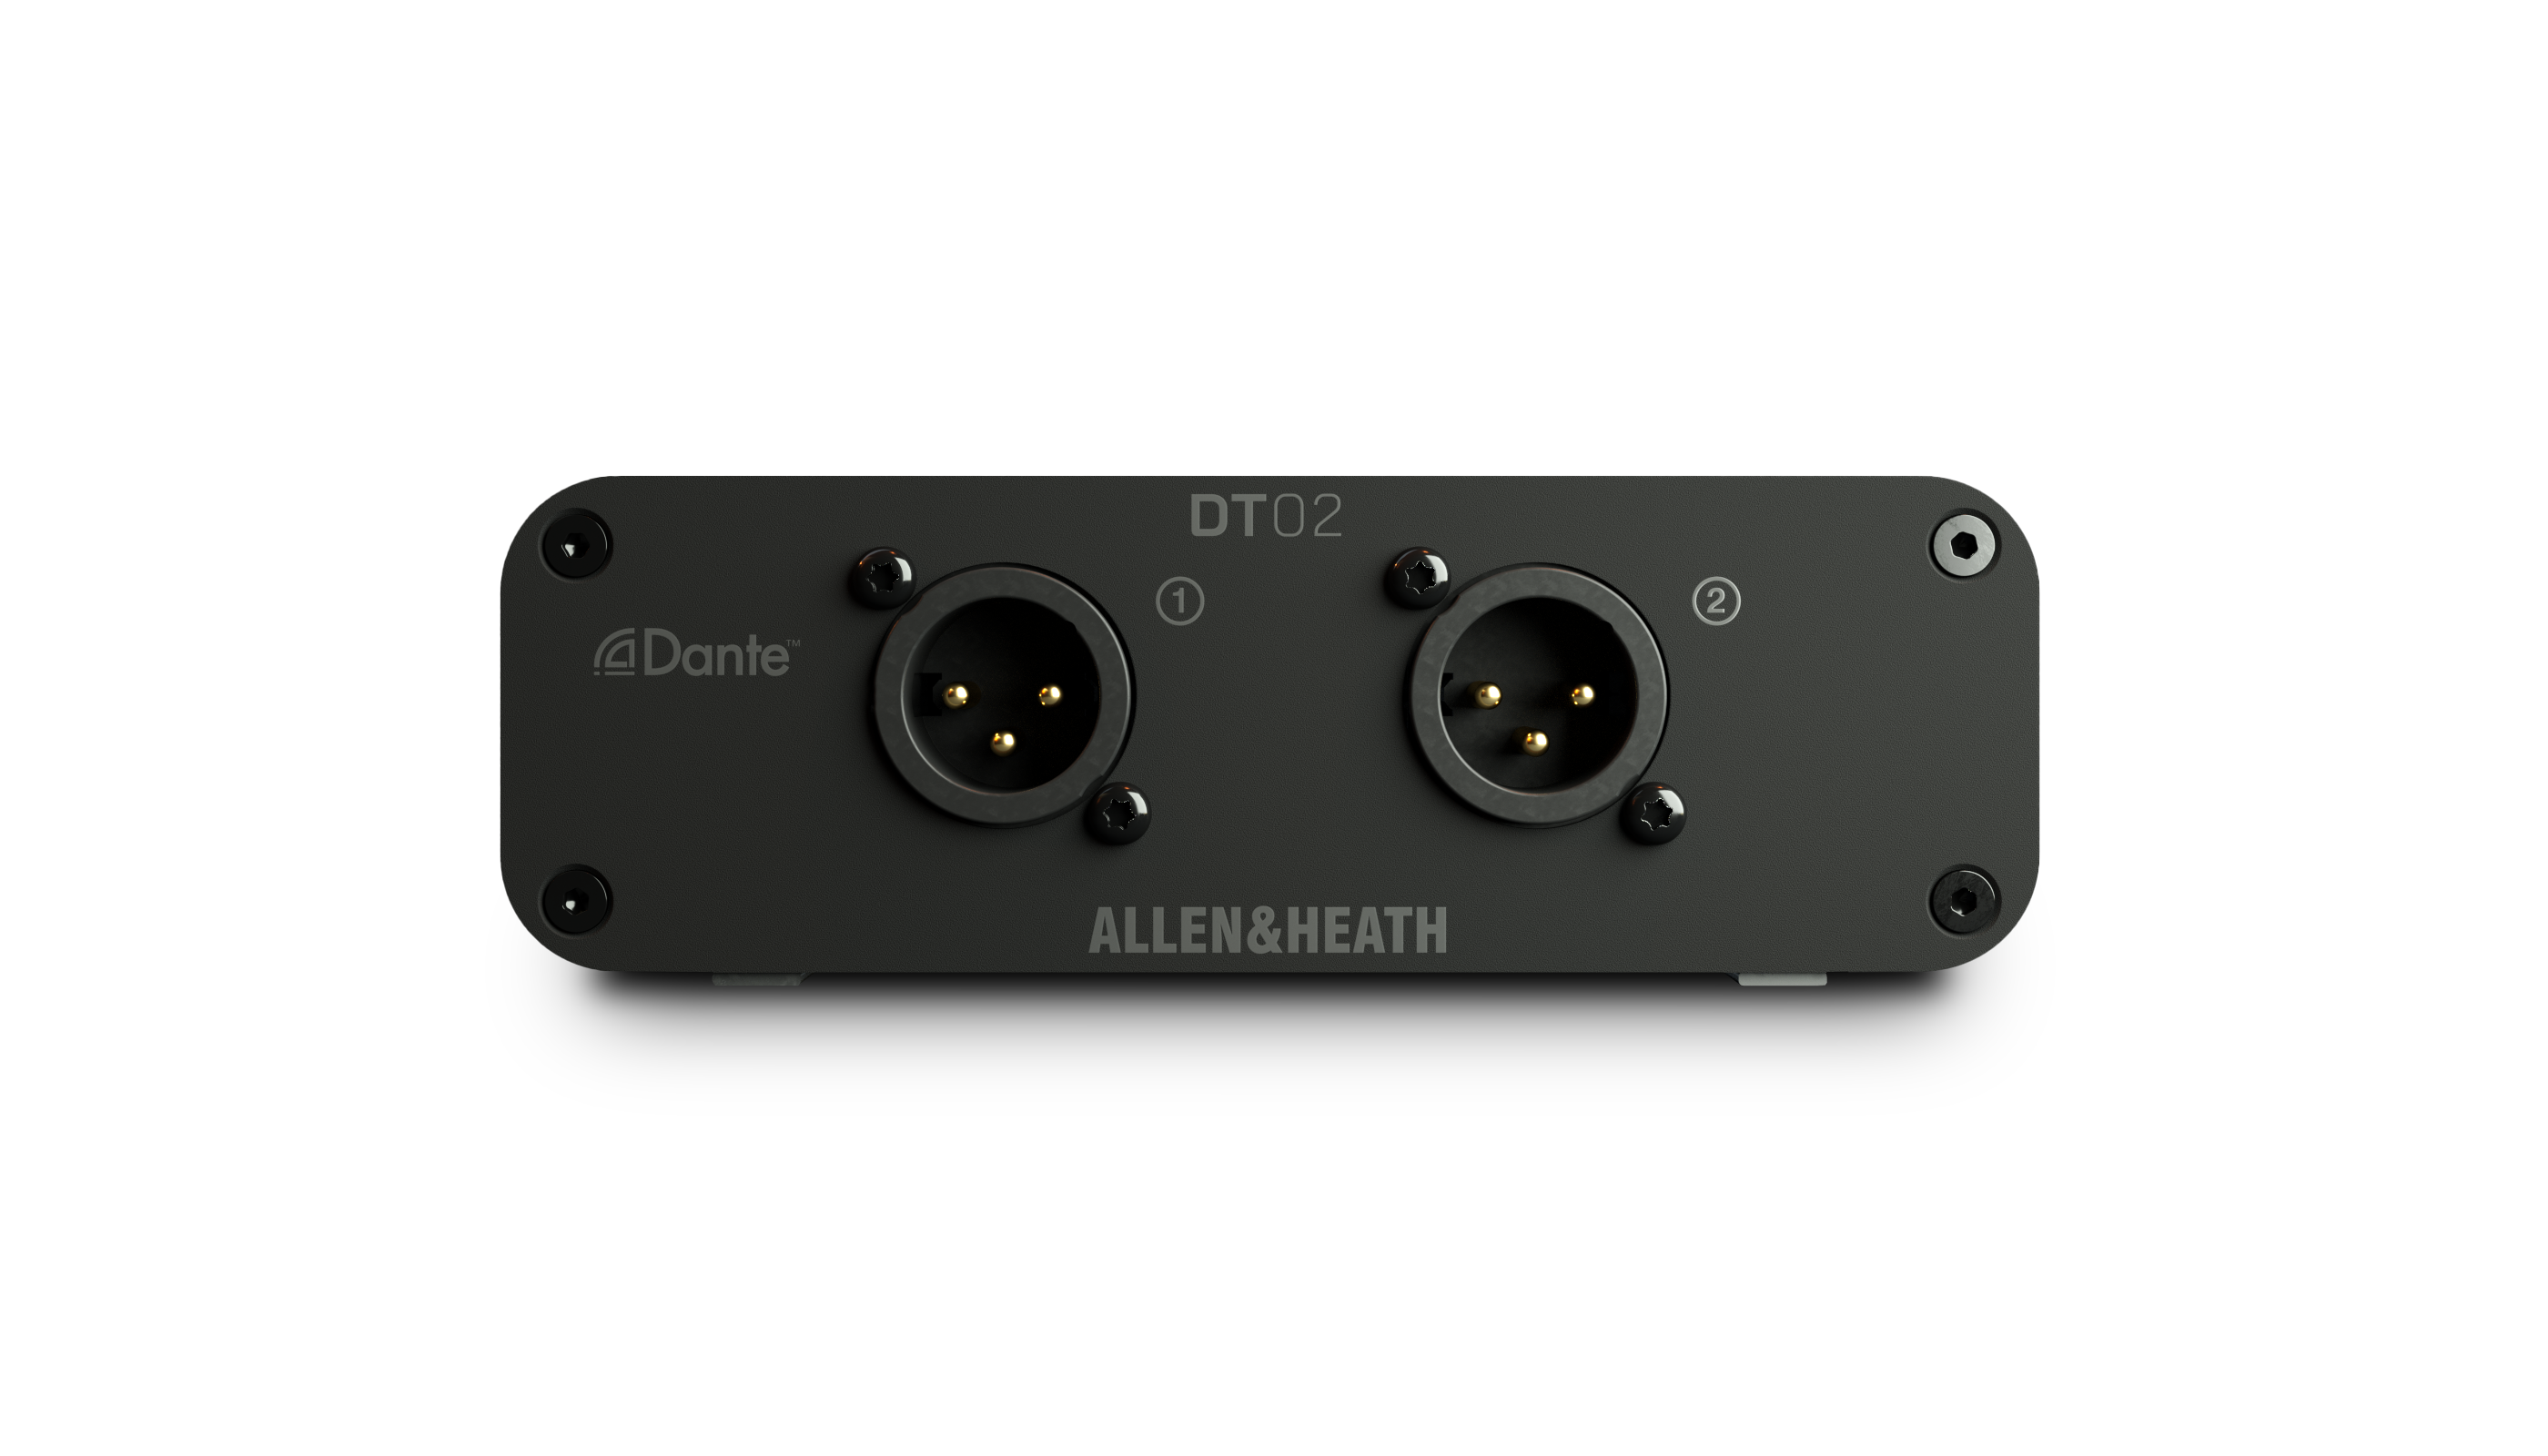 Allen & Heath | DT02 Dante Input Interface for DLive / Avantis / SQ Mixers